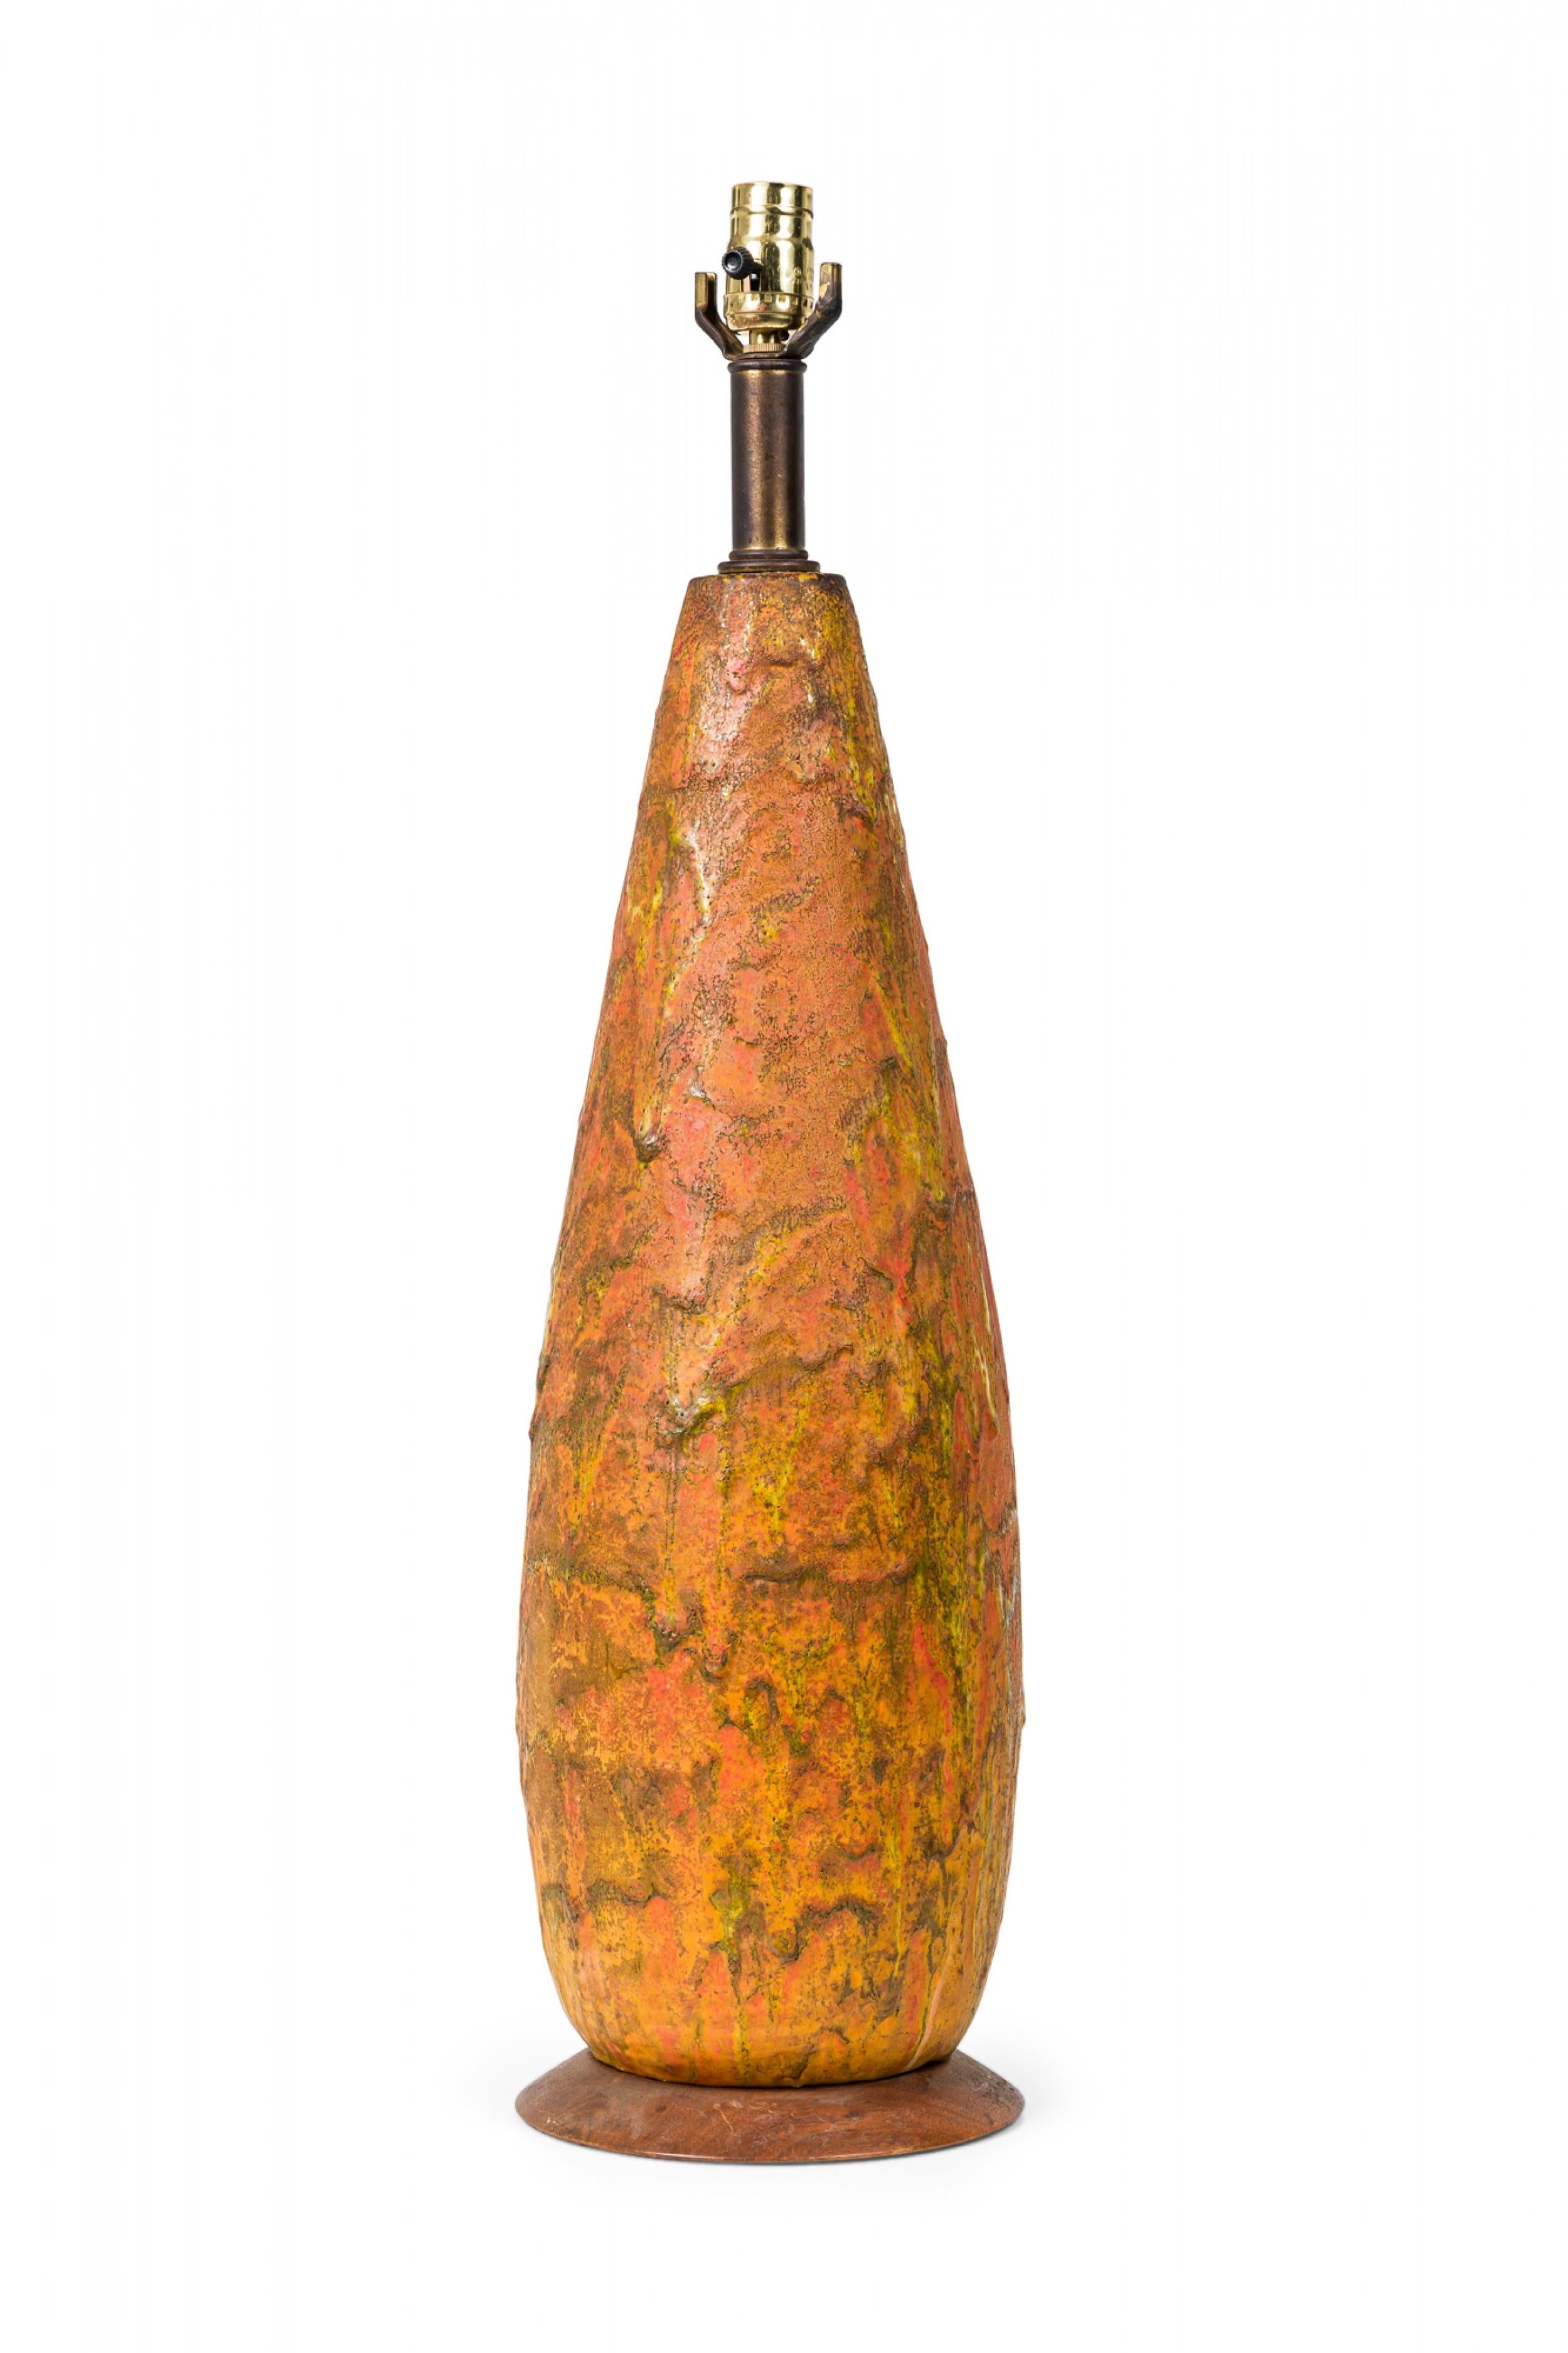 Lampe de table de forme conique en céramique américaine du milieu du siècle, effilée vers le haut, abritant une tige en laiton avec une prise d'interrupteur fonctionnant, le corps baignant dans une épaisse glaçure goutte à goutte de style lave sur